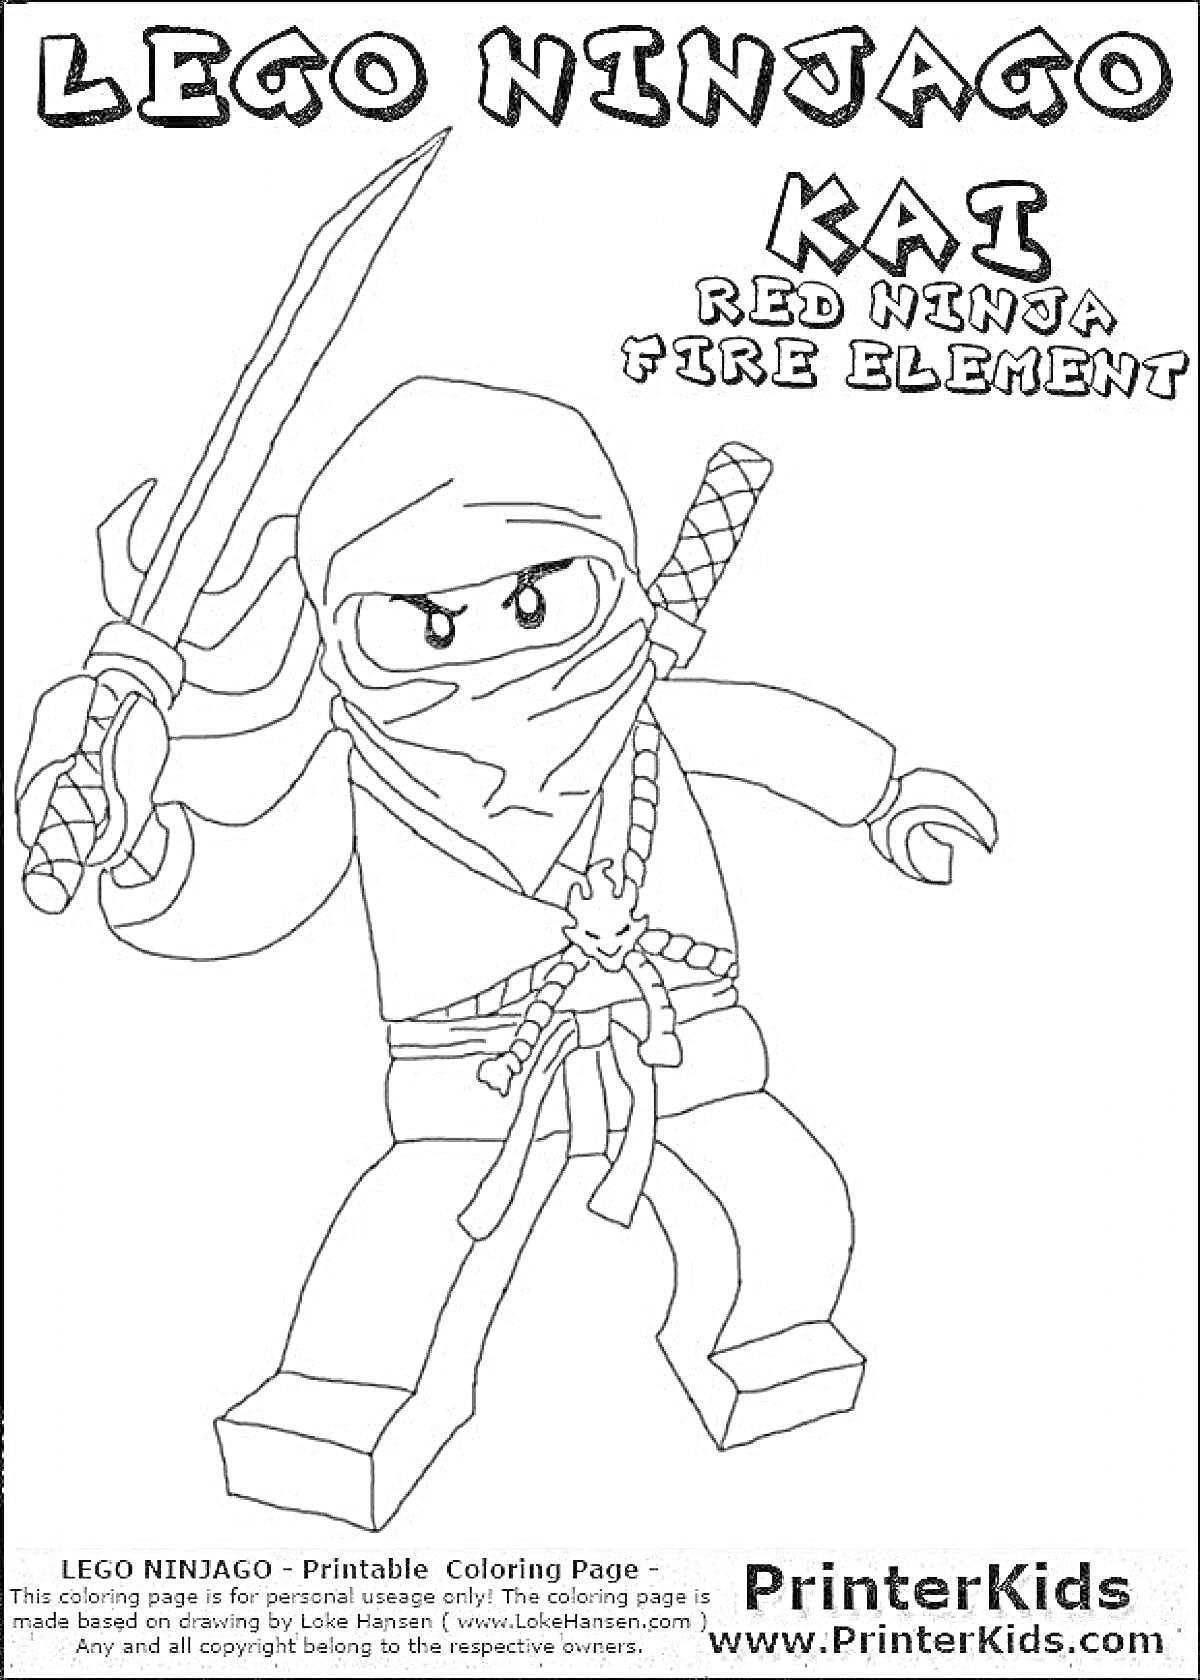 Раскраска Раскраска Лего Ниндзяго Кай с мечом, поясом и платком, с надписями